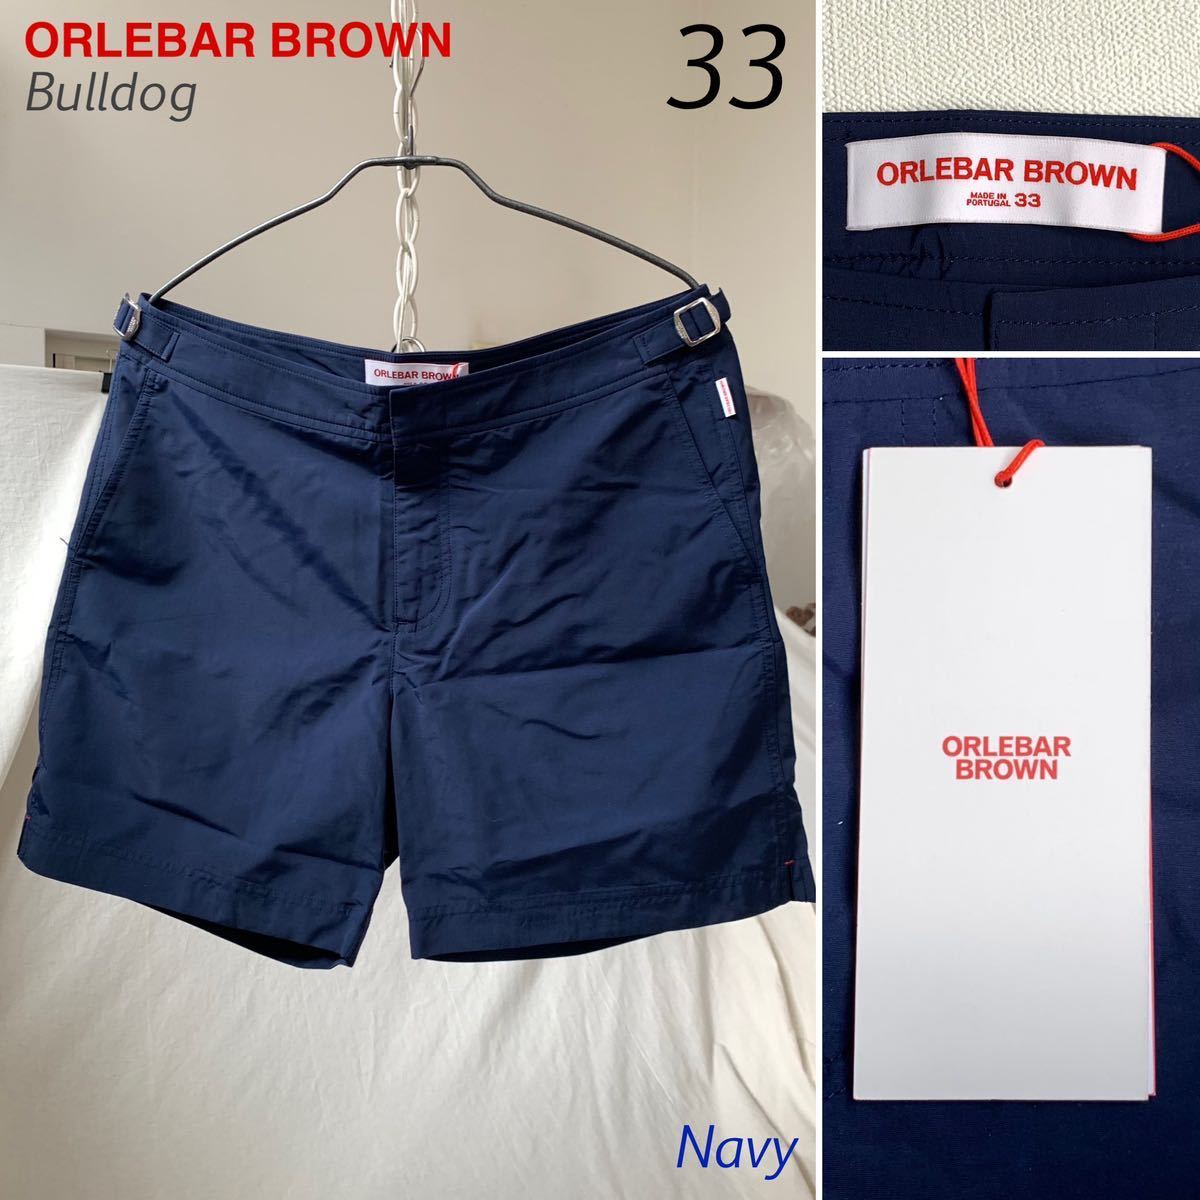 【安心発送】 オールバーブラウン BROWN ORLEBAR 新品 Bulldog 袋付 パンツ ショート 007 ネイビー 水着 メンズ 33 ショーツ スイム ミドル丈 ブルドッグ Lサイズ以上